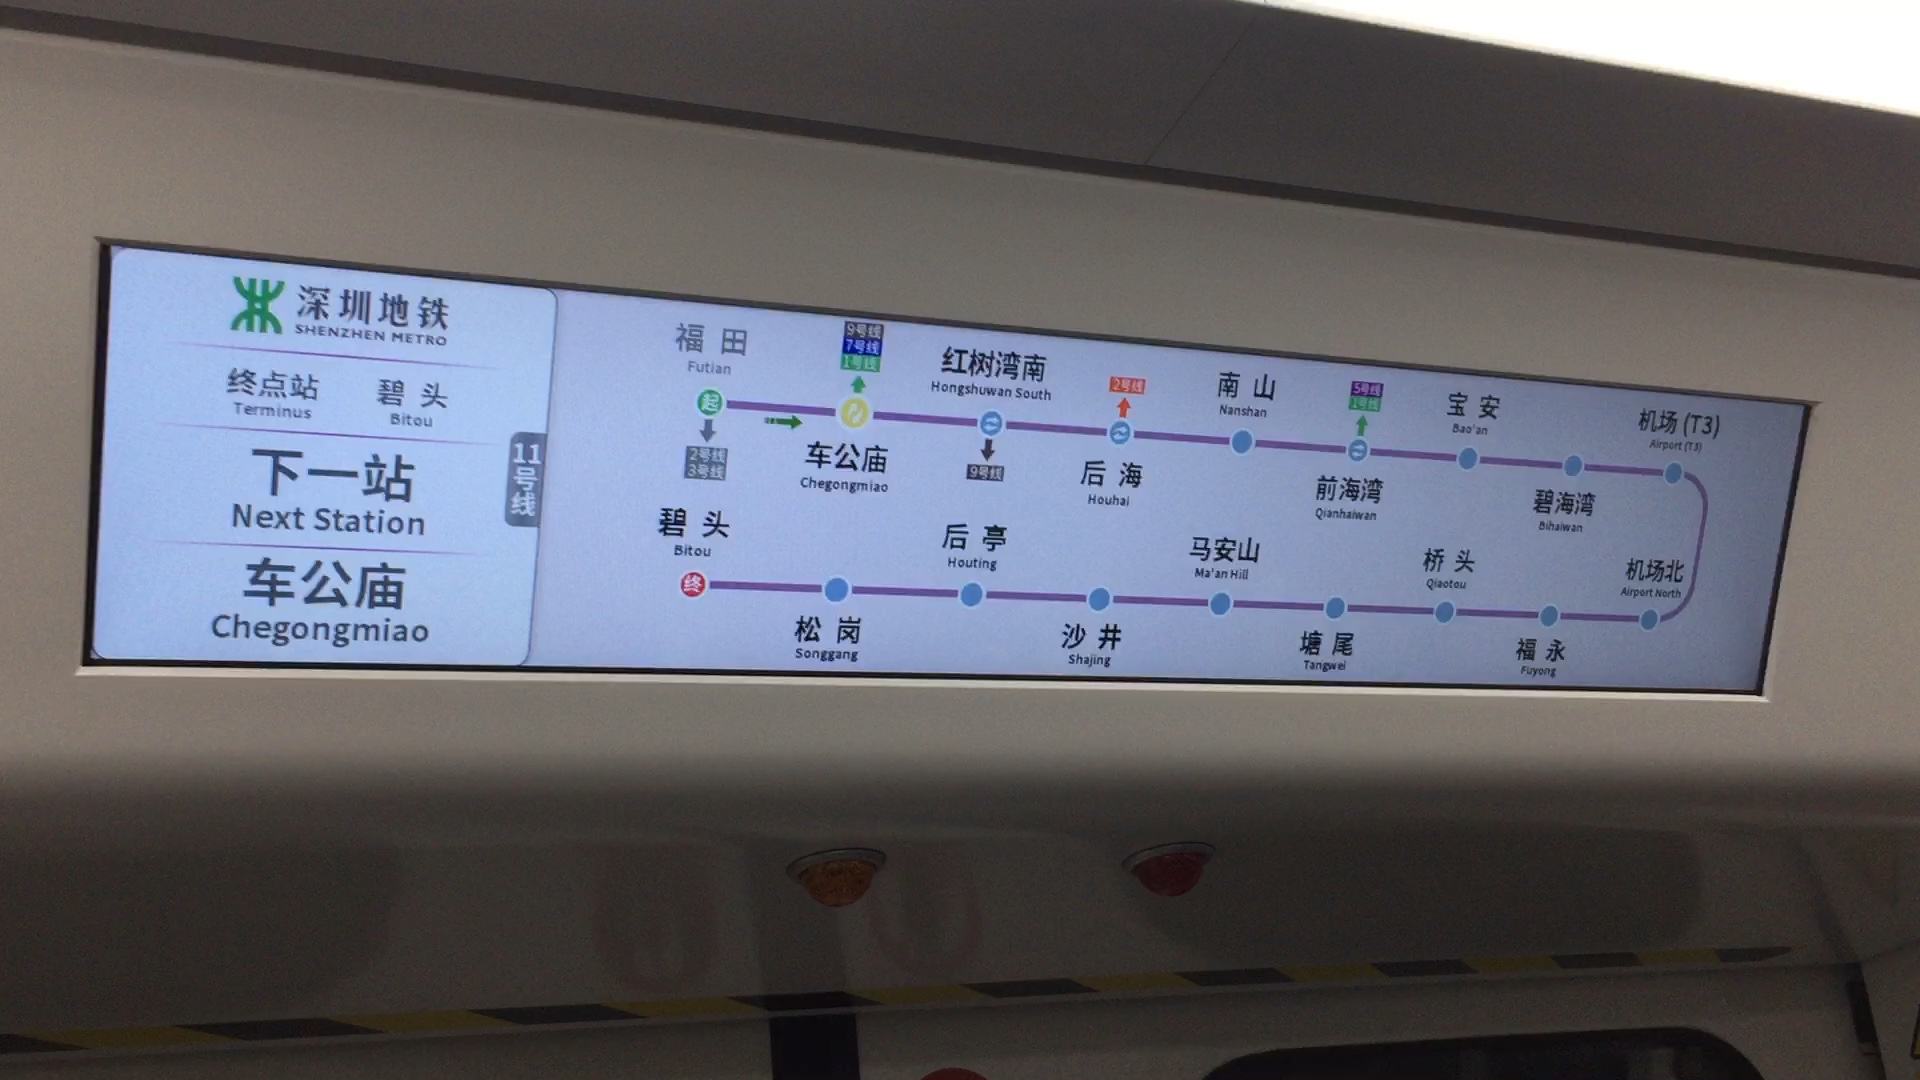 深圳地铁11号线中车株机1104列车运行于福田车公庙区间碧头方向